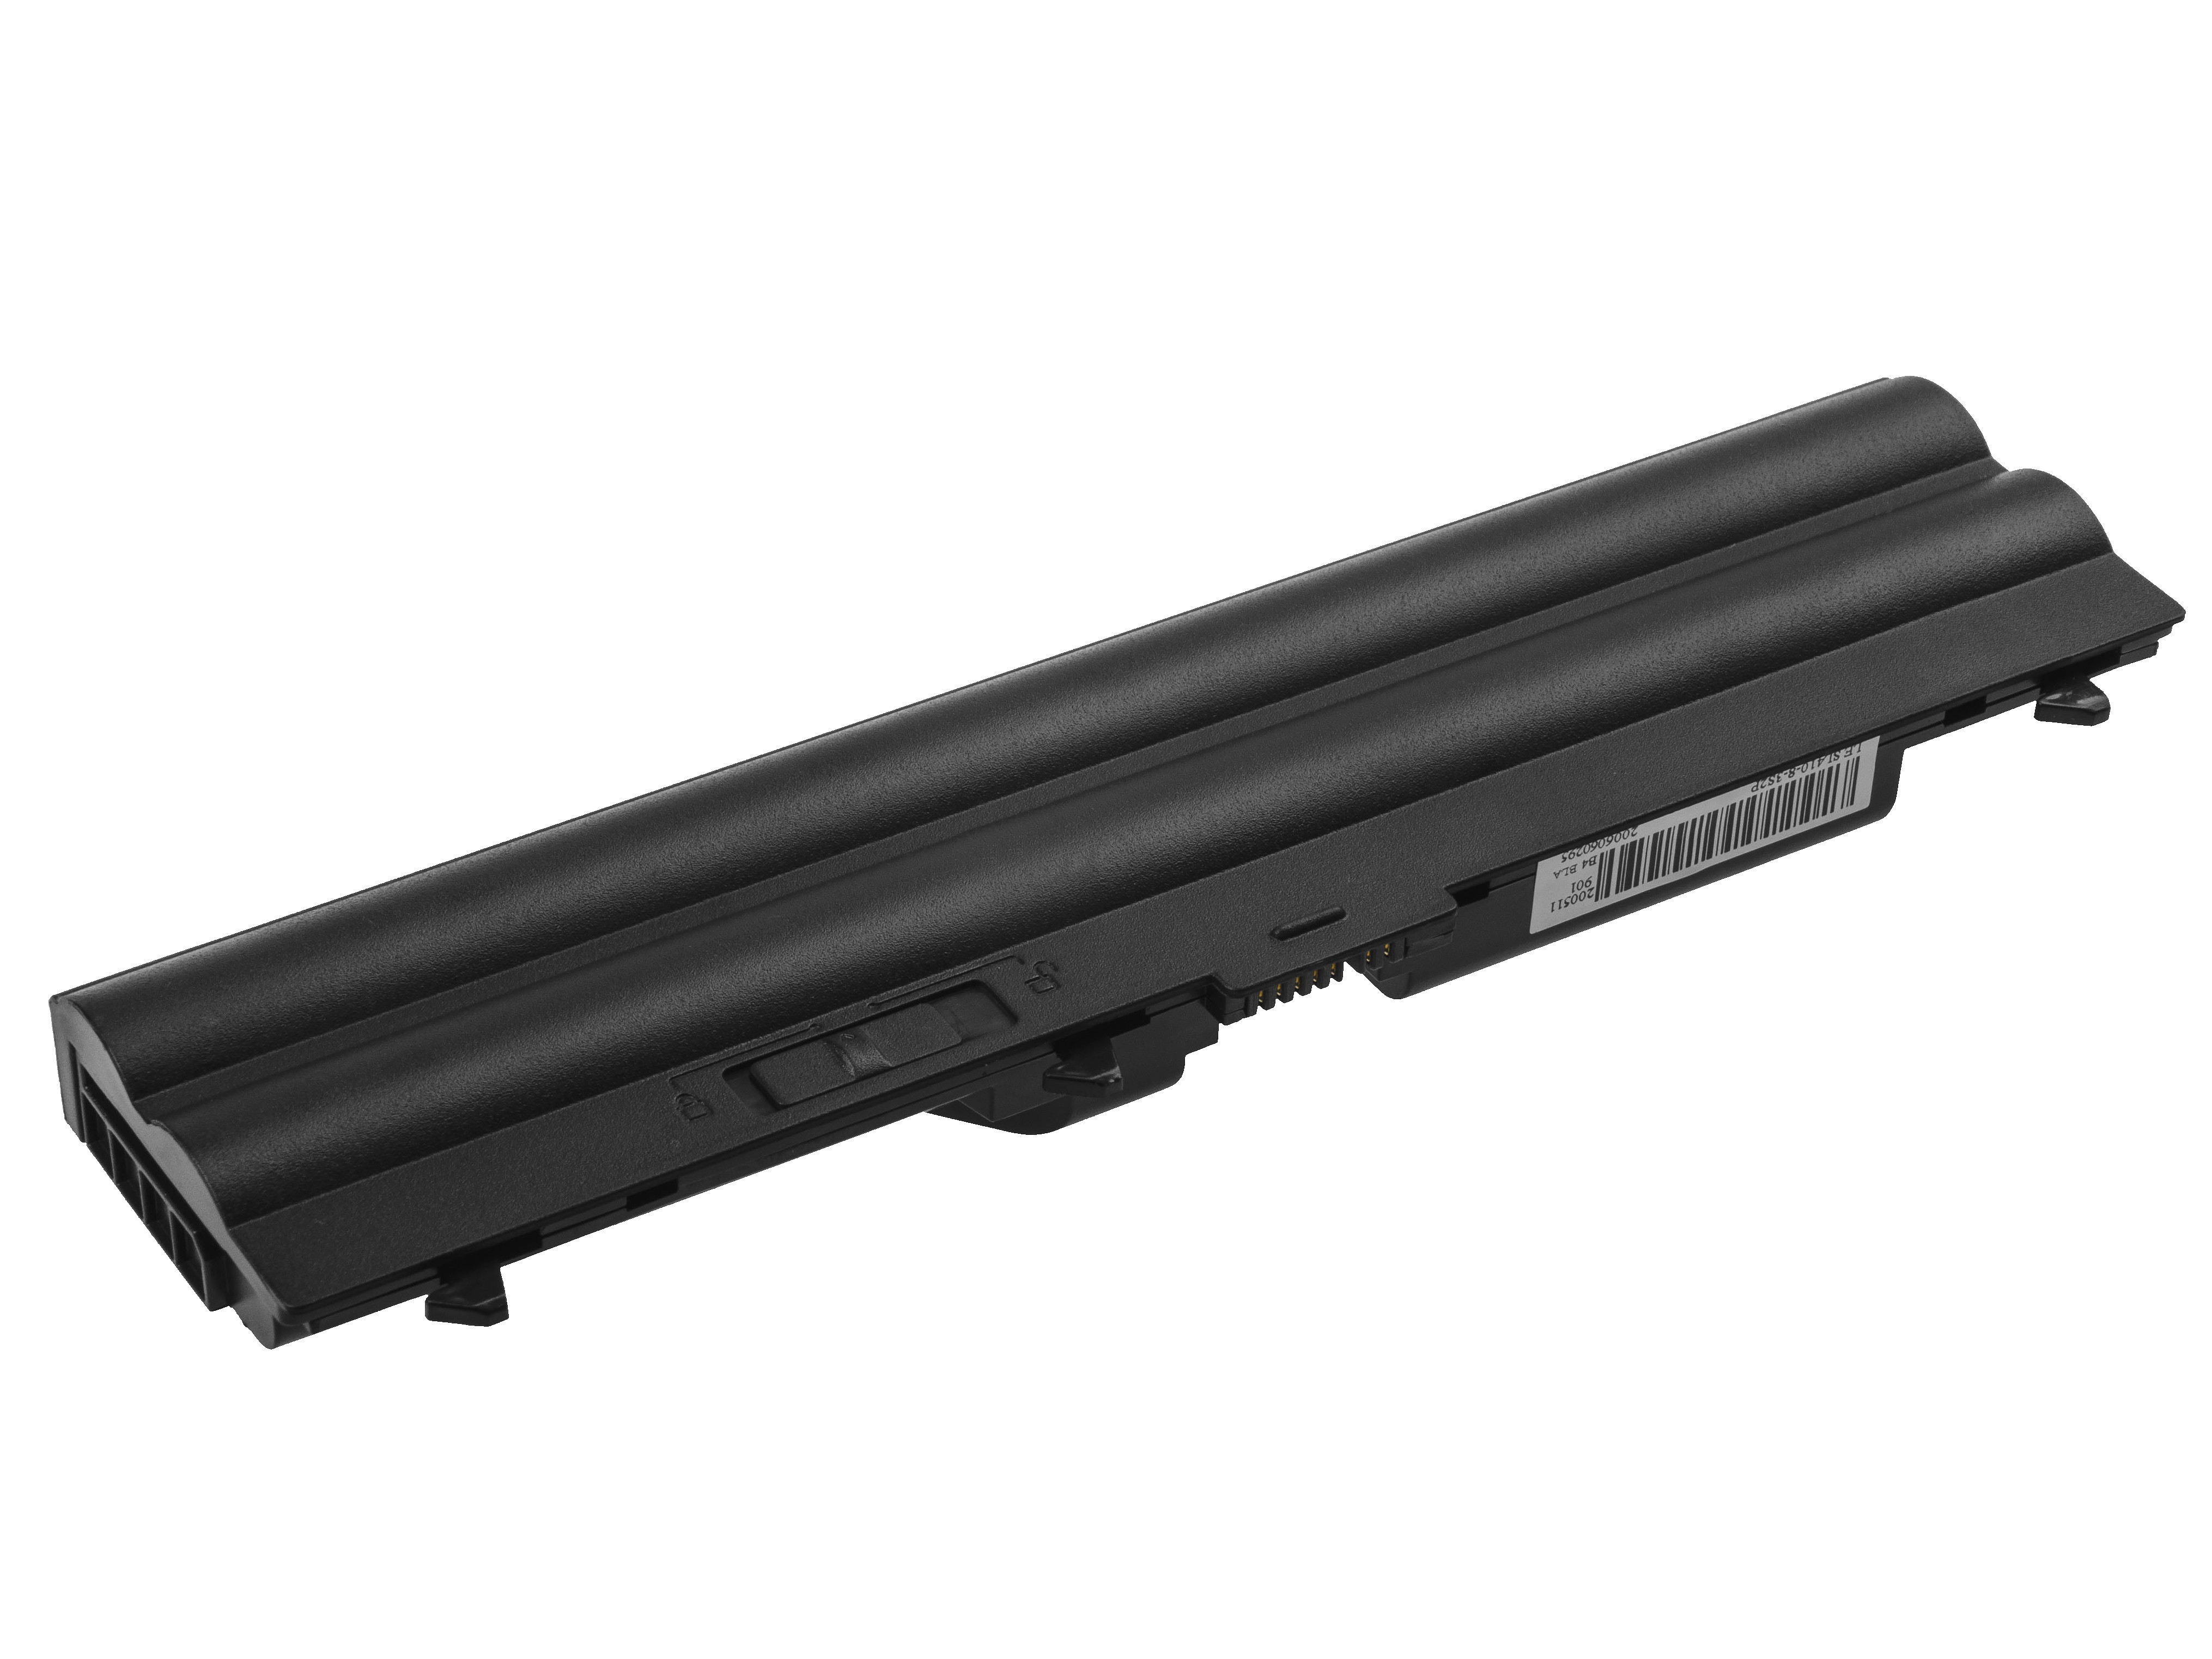 Green Cell Battery ULTRA 42T4795 for Lenovo ThinkPad T410 T420 T510 T520 W510 W520 SL410 SL510 L510 L520